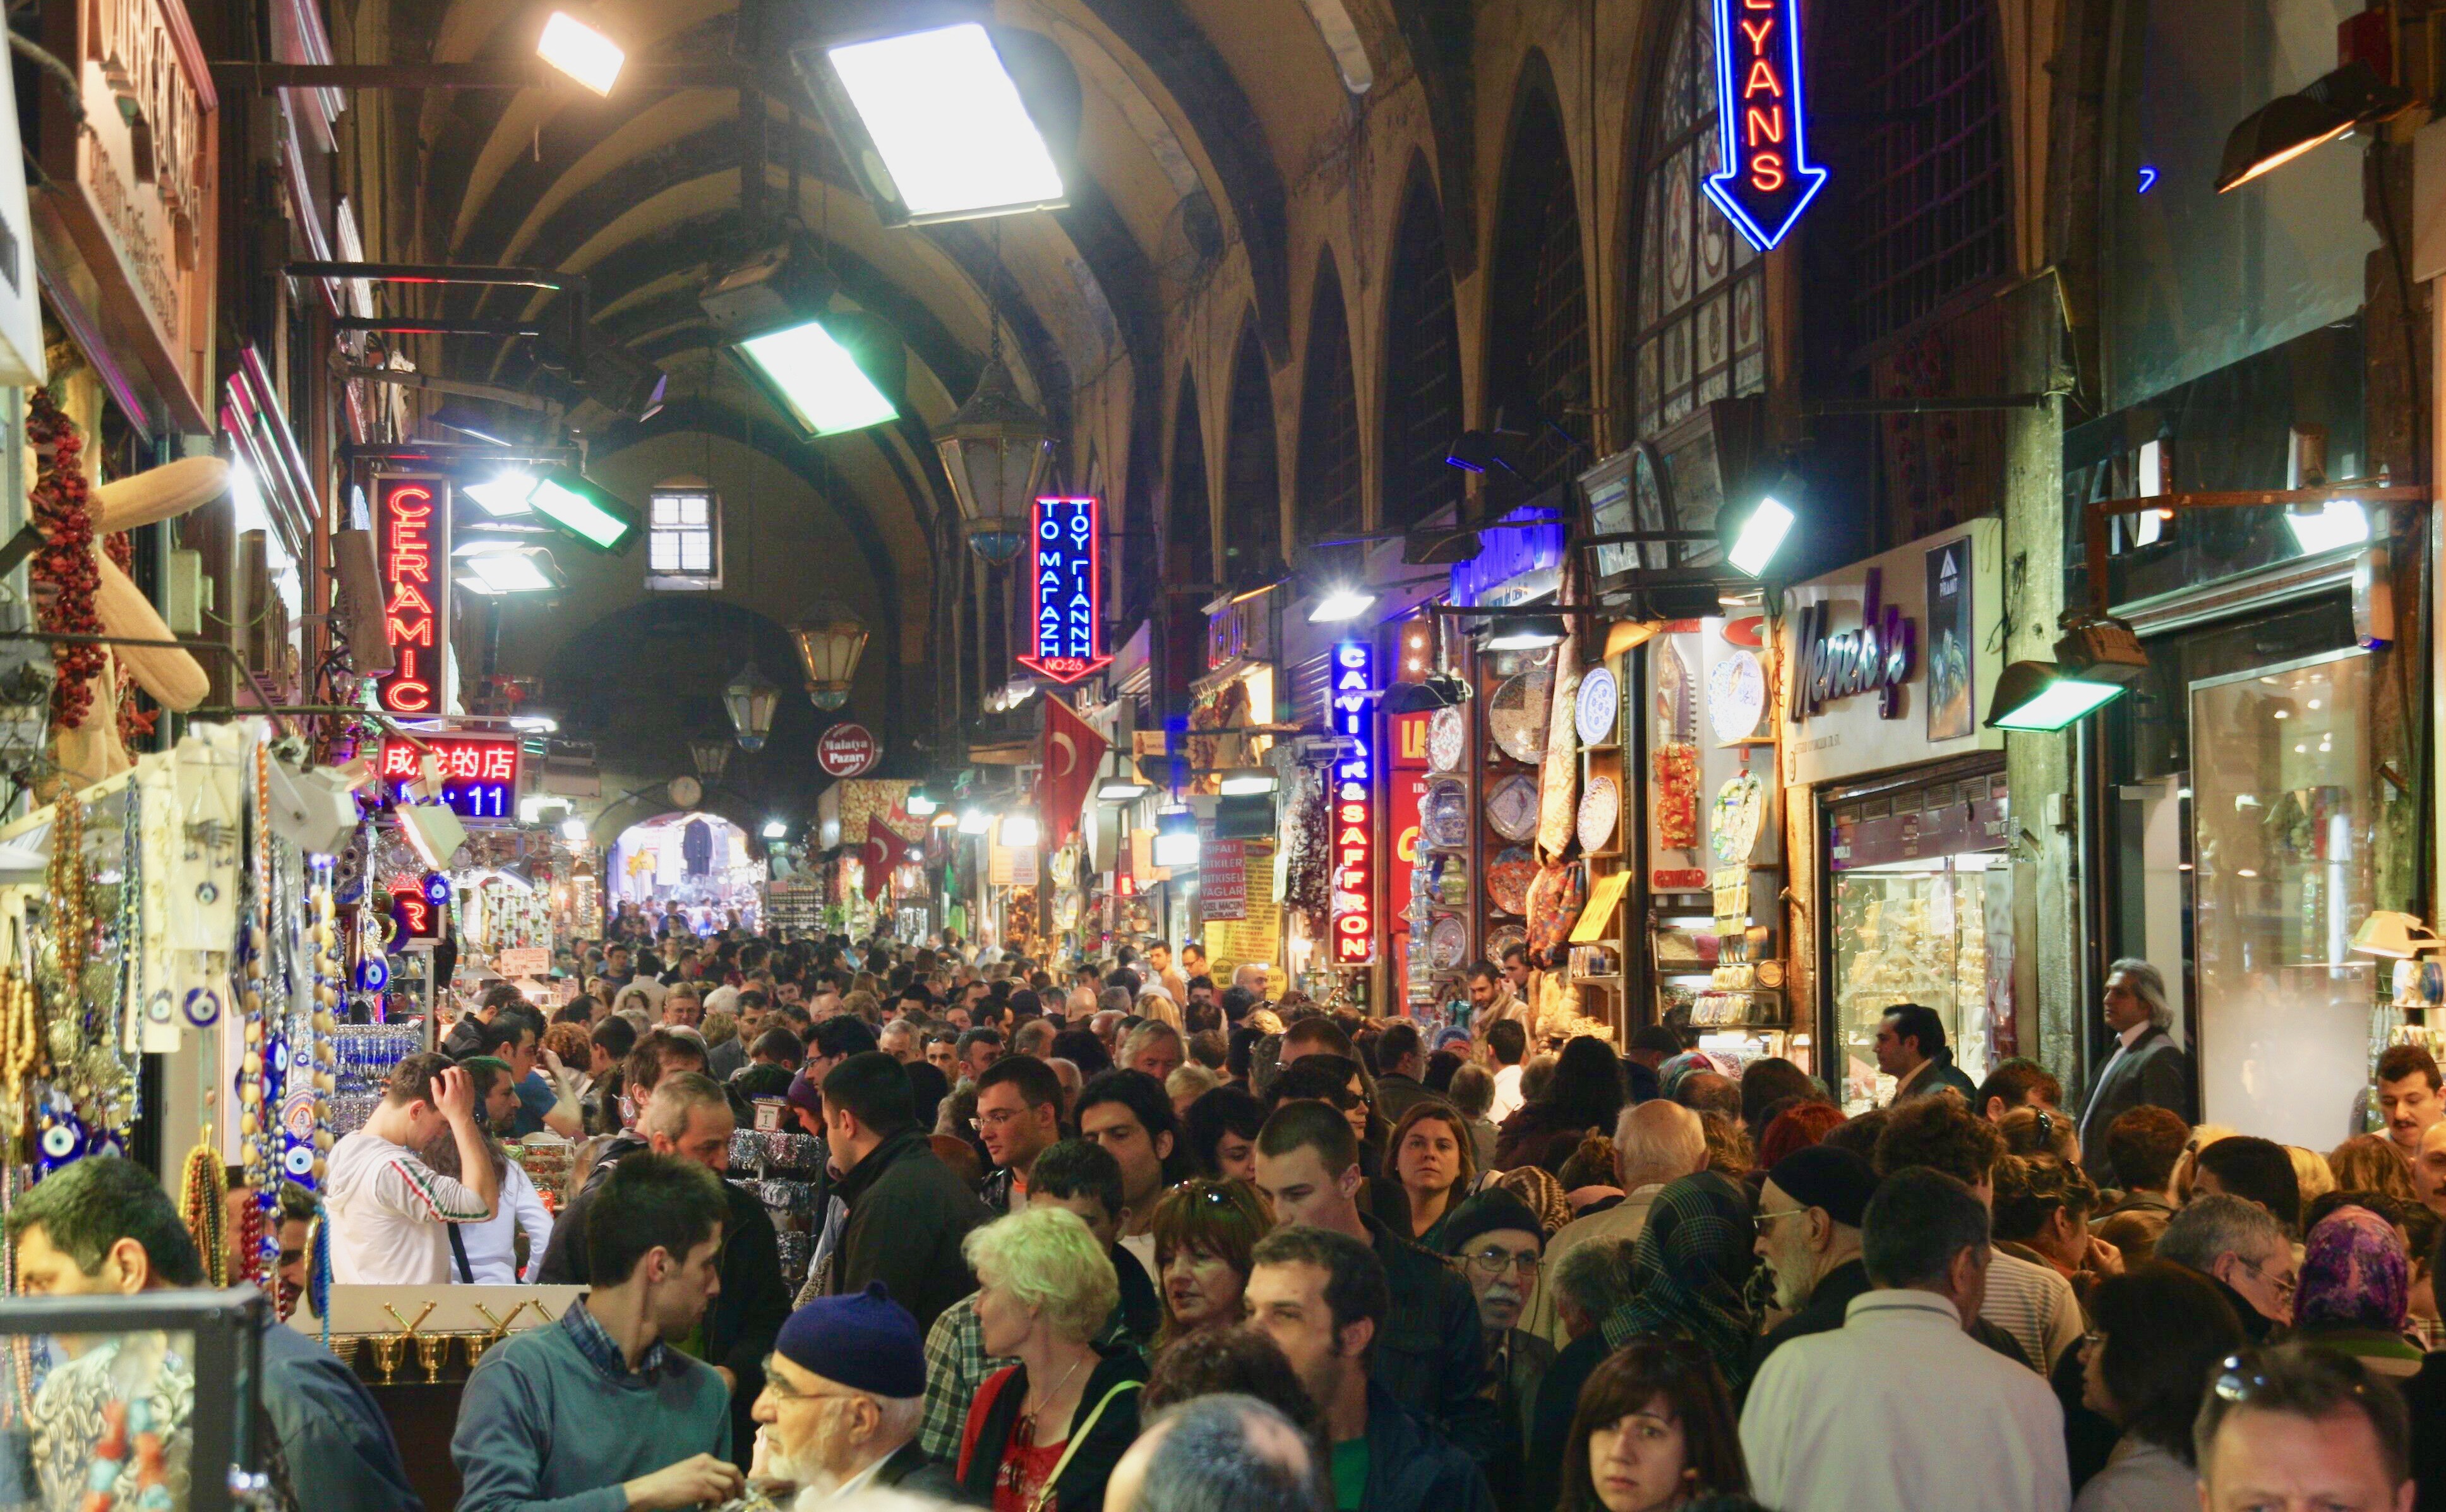 Alors que les Européens peinent à faire leur retour, les touristes se bousculent toujours aussi nombreux dans le Grand Bazar d'Istanbul / Crédit photo : JDL